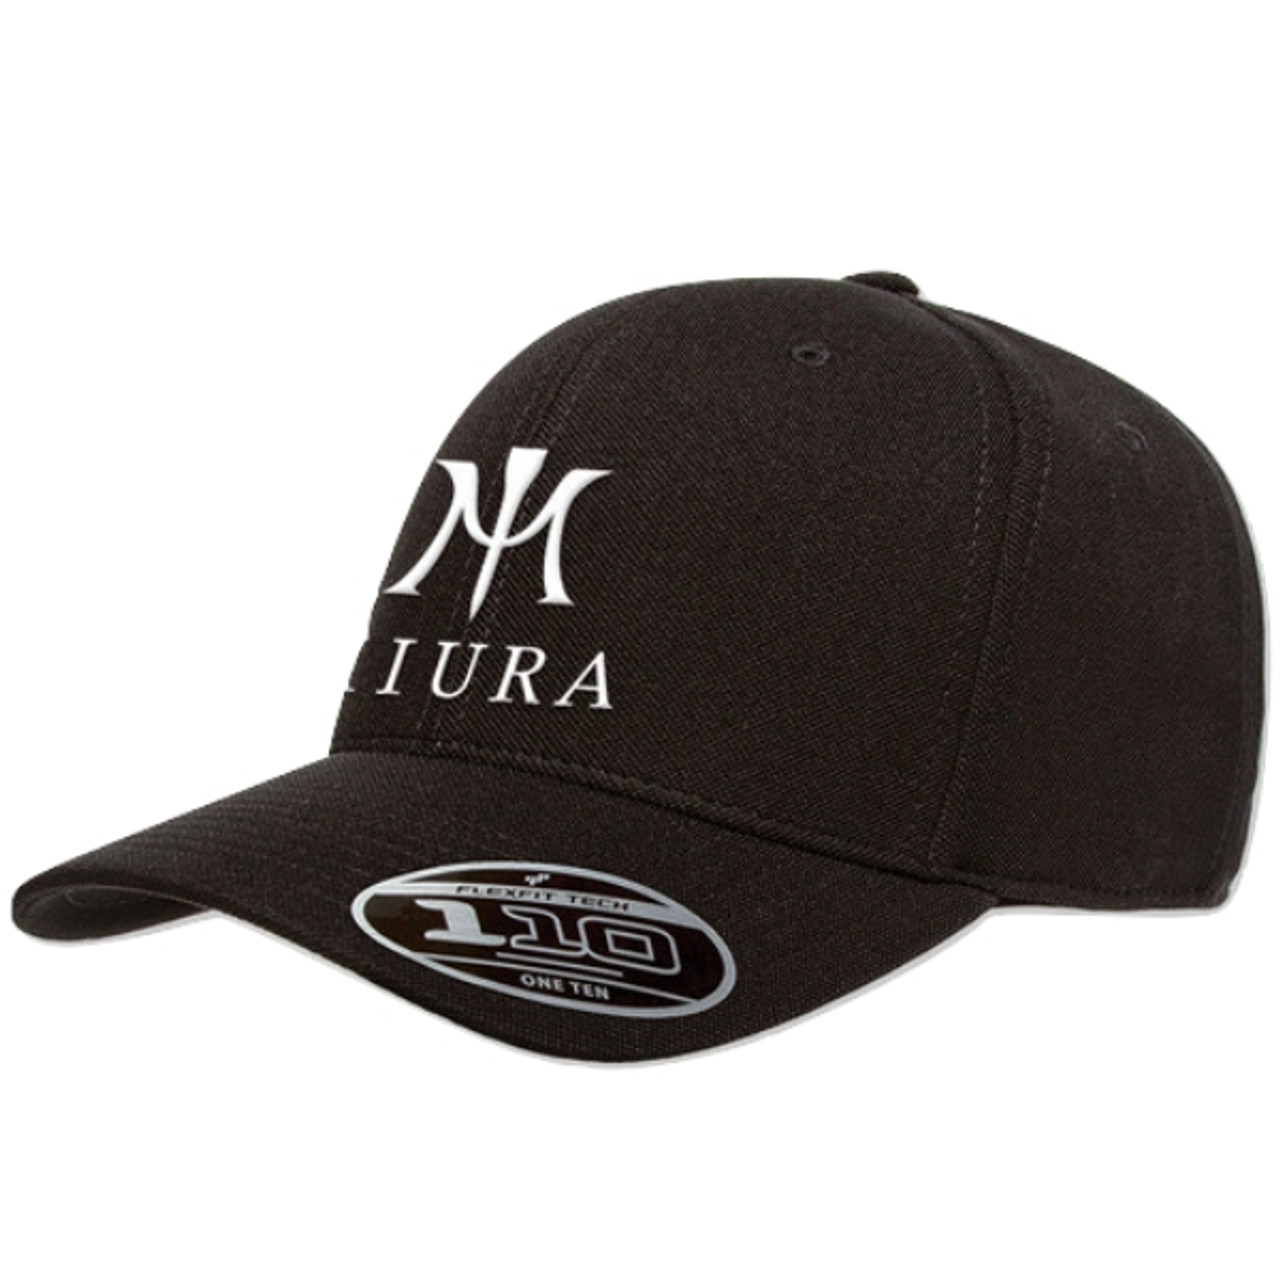 Miura FlexFit 110 Hats - Shop Tour Fresno